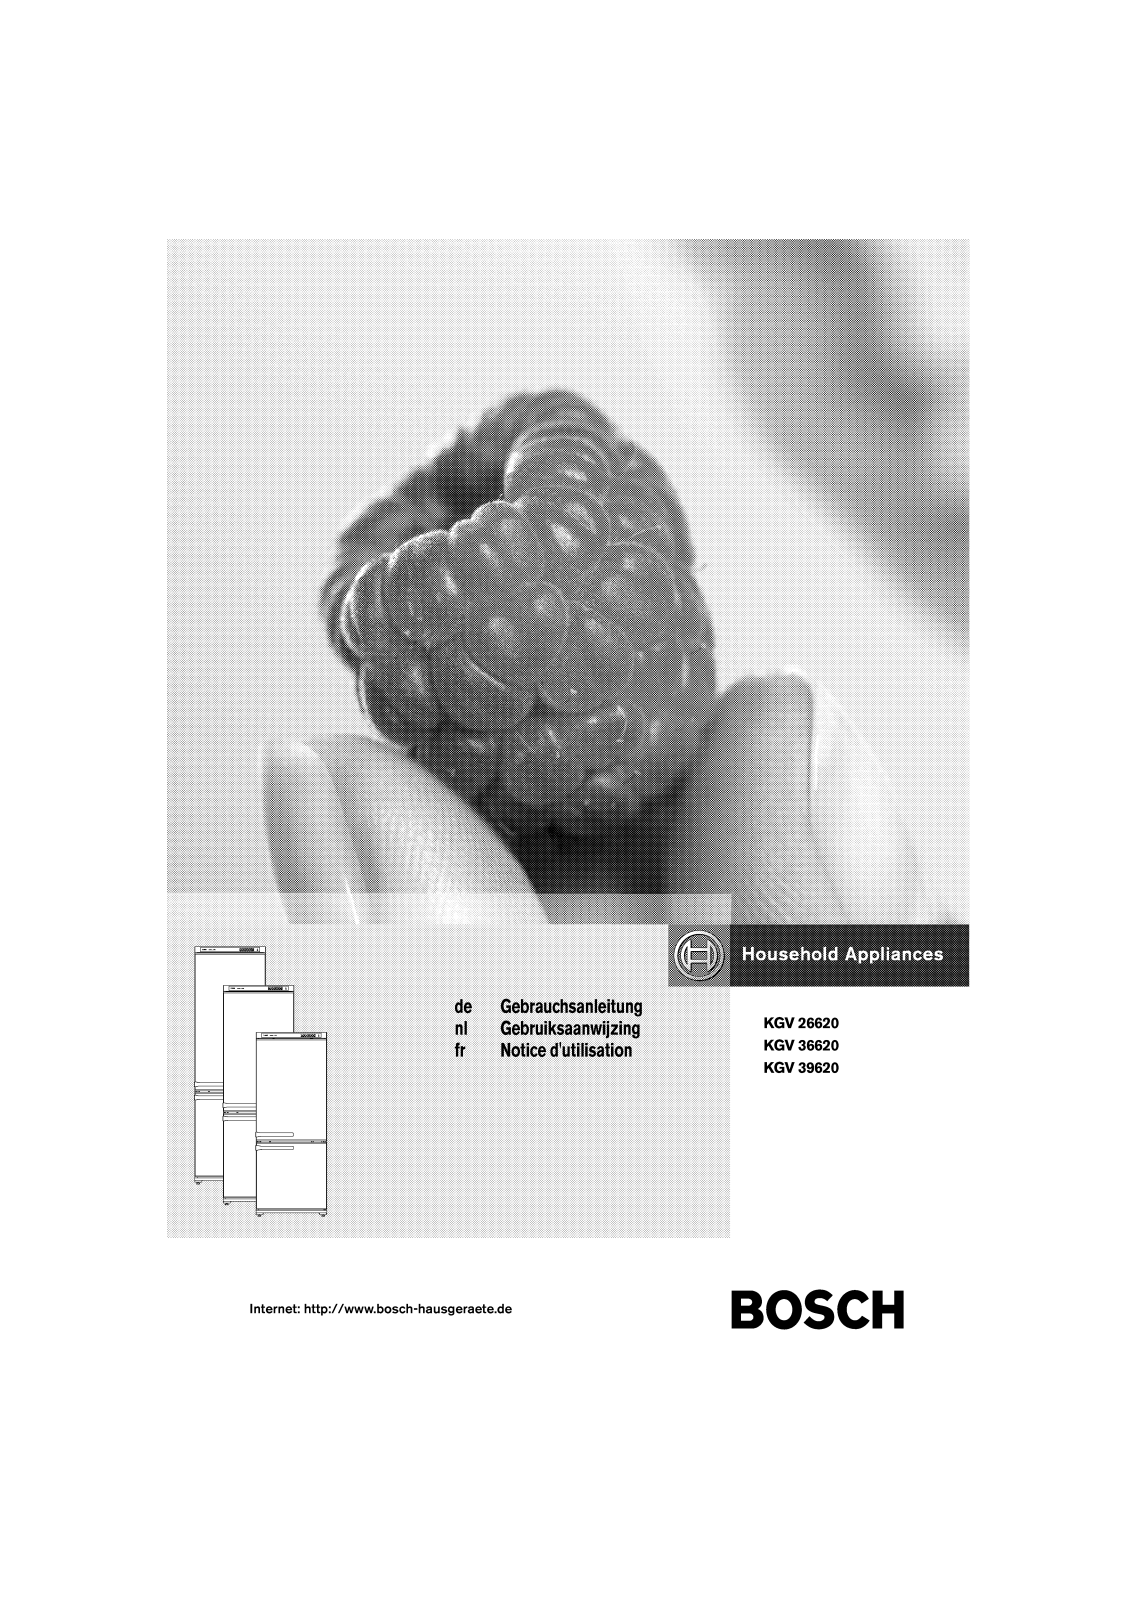 BOSCH KGV39620 User Manual